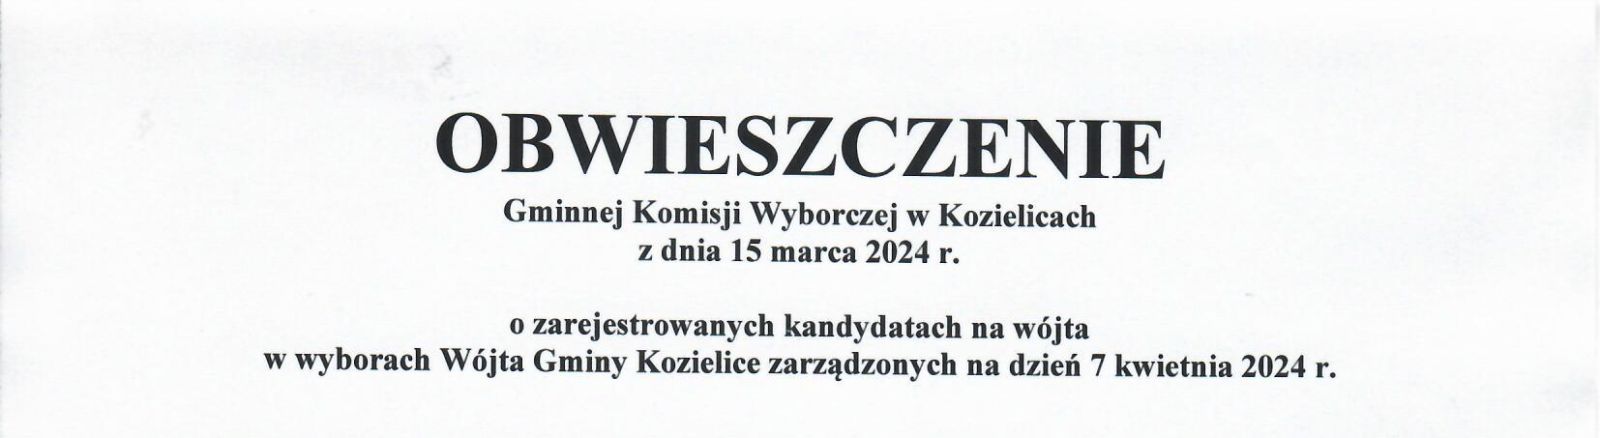 Zdjęcie: OBWIESZCZENIE Gminnej komisji wyborczej w Kozielicach z dnia 15 marca 2024 r. o zarejestrowanych kandydatach na wójta w wyborach Wójta Gminy Kozielice zarządzonych na dzień 7 kwietnia 2024 r.